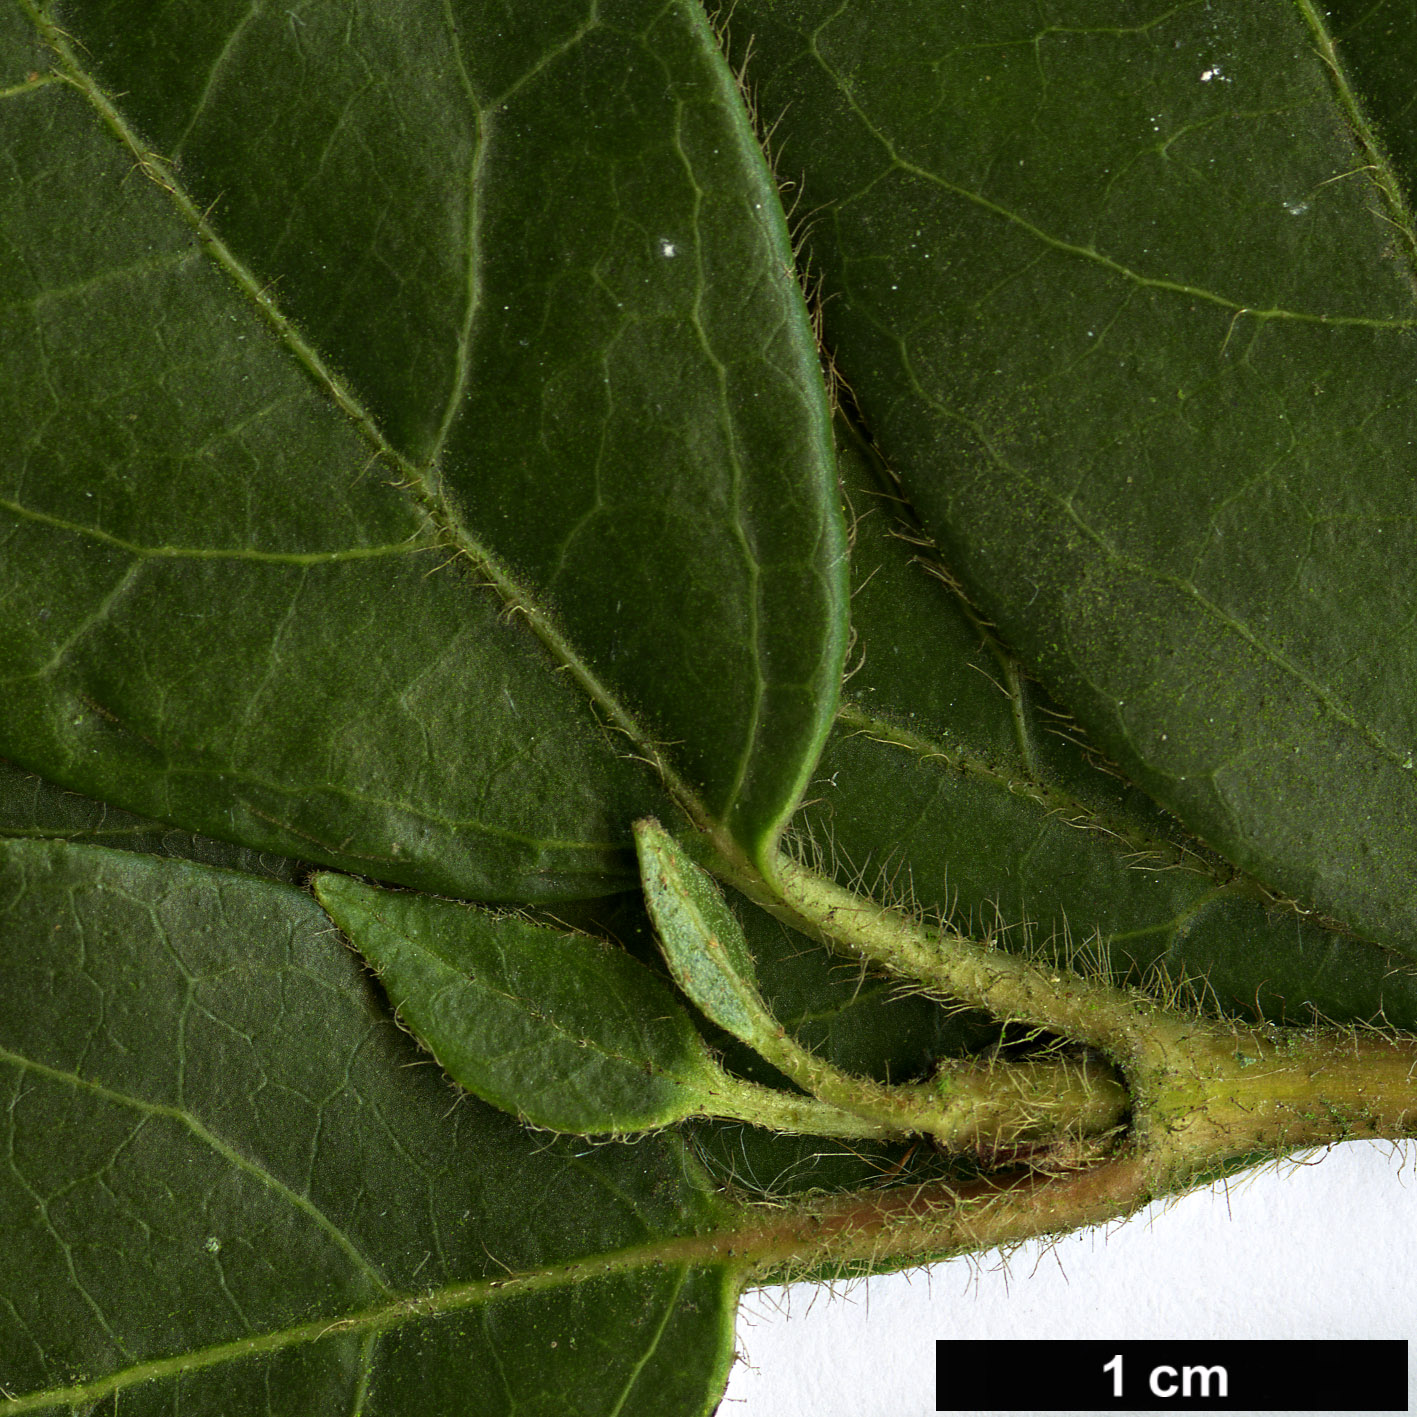 High resolution image: Family: Adoxaceae - Genus: Viburnum - Taxon: tinus